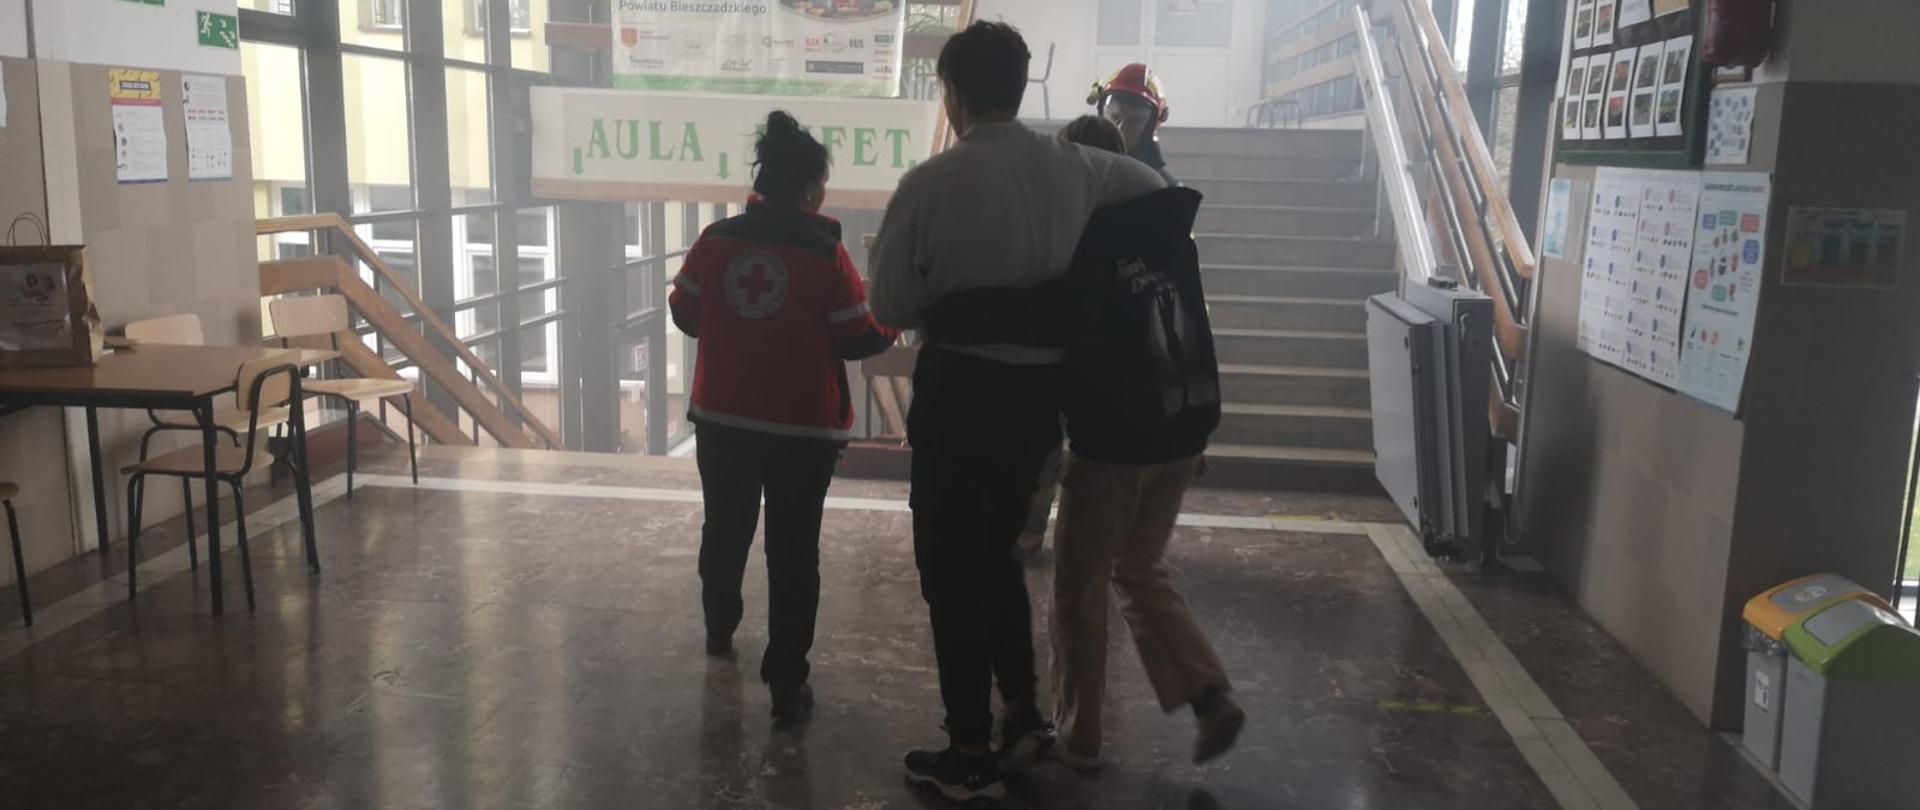 Na zdjęciu widać kobietę w bluzie PCK oraz dwójkę uczniów którzy wyprowadzają się pod ramię ze szkoły a znajdują się na szkolnym korytarzu. 